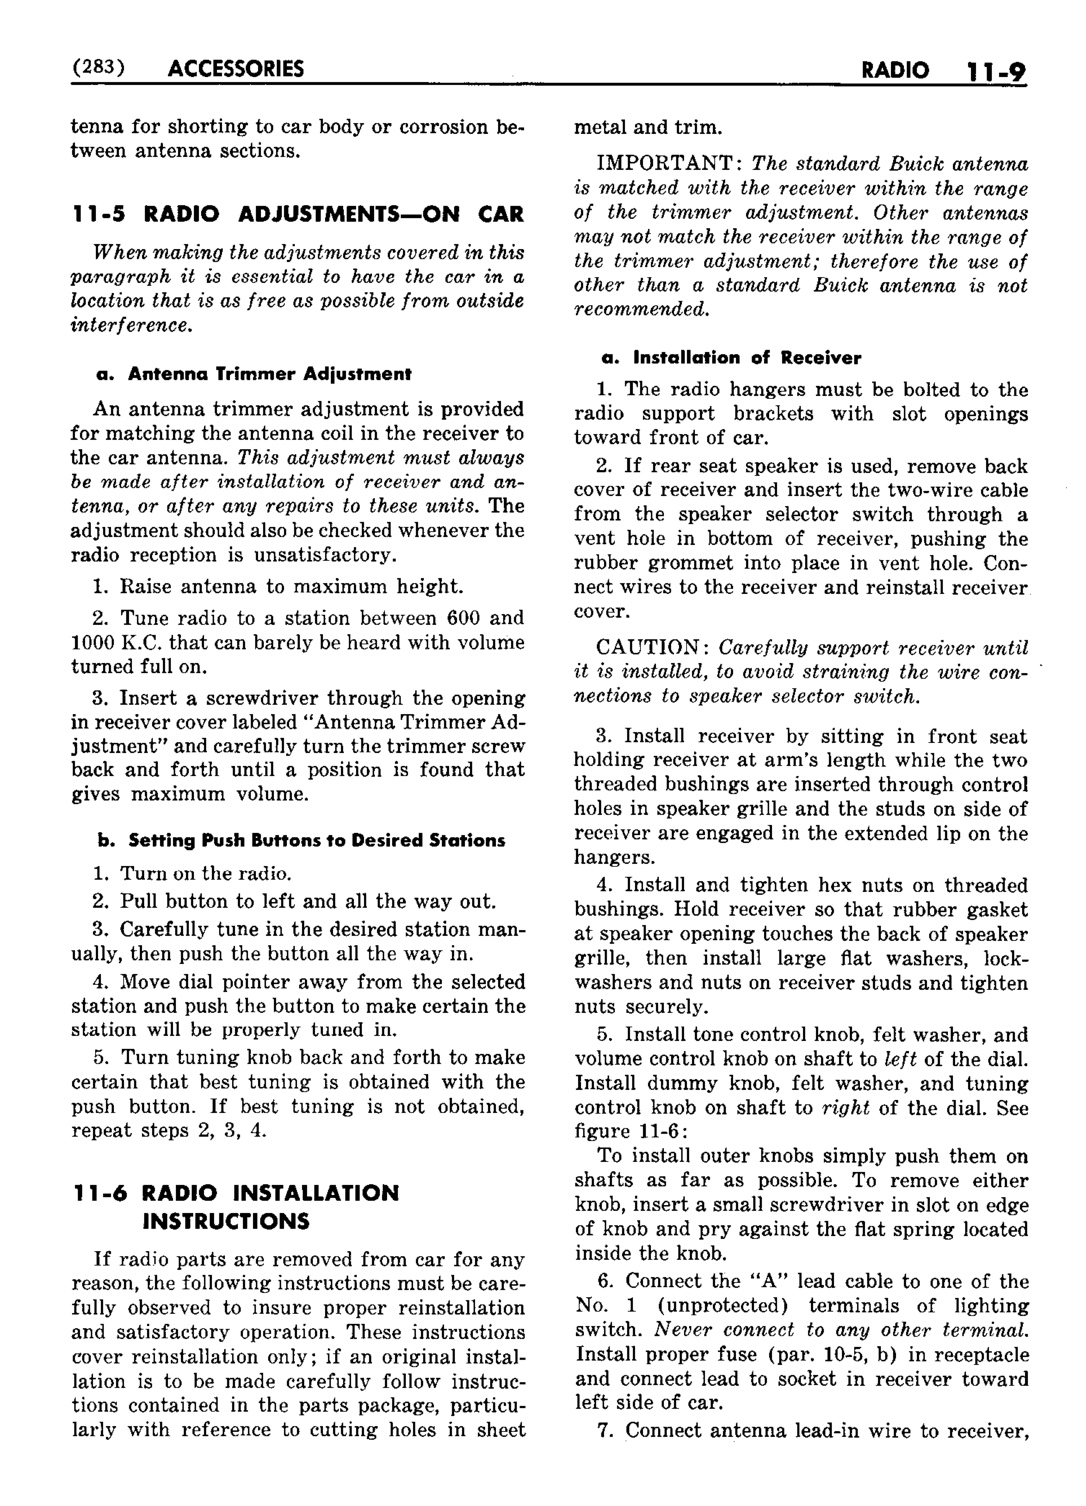 n_12 1953 Buick Shop Manual - Accessories-009-009.jpg